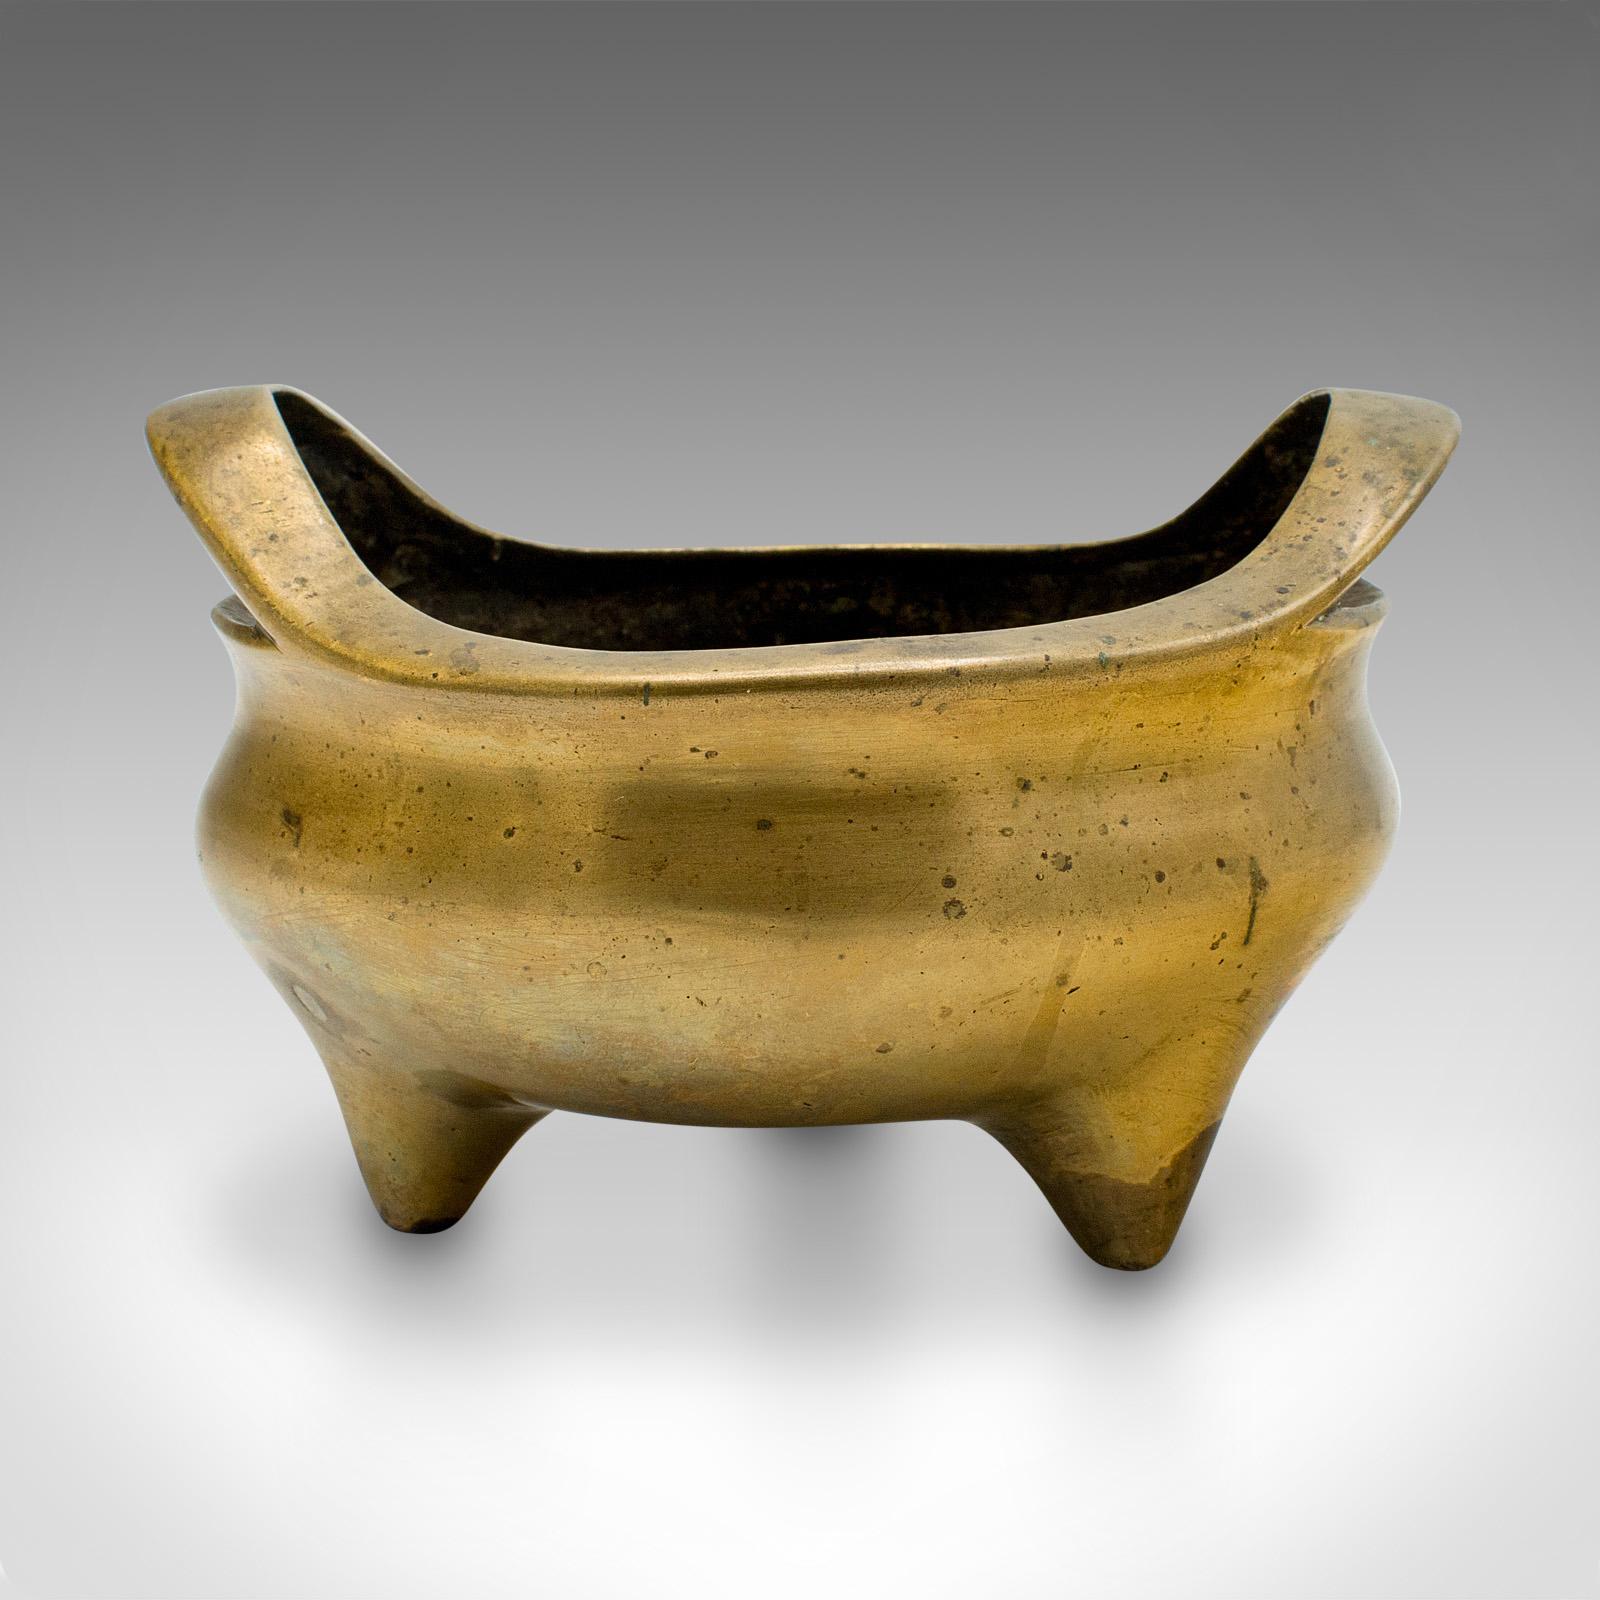 Il s'agit d'un encensoir ancien. Brûleur d'encens, coupe ou plat de libation chinois en bronze, datant du début de l'époque victorienne, vers 1850.

Agréable au toucher et de forme attrayante
Présente une patine d'usage désirable et est en bon